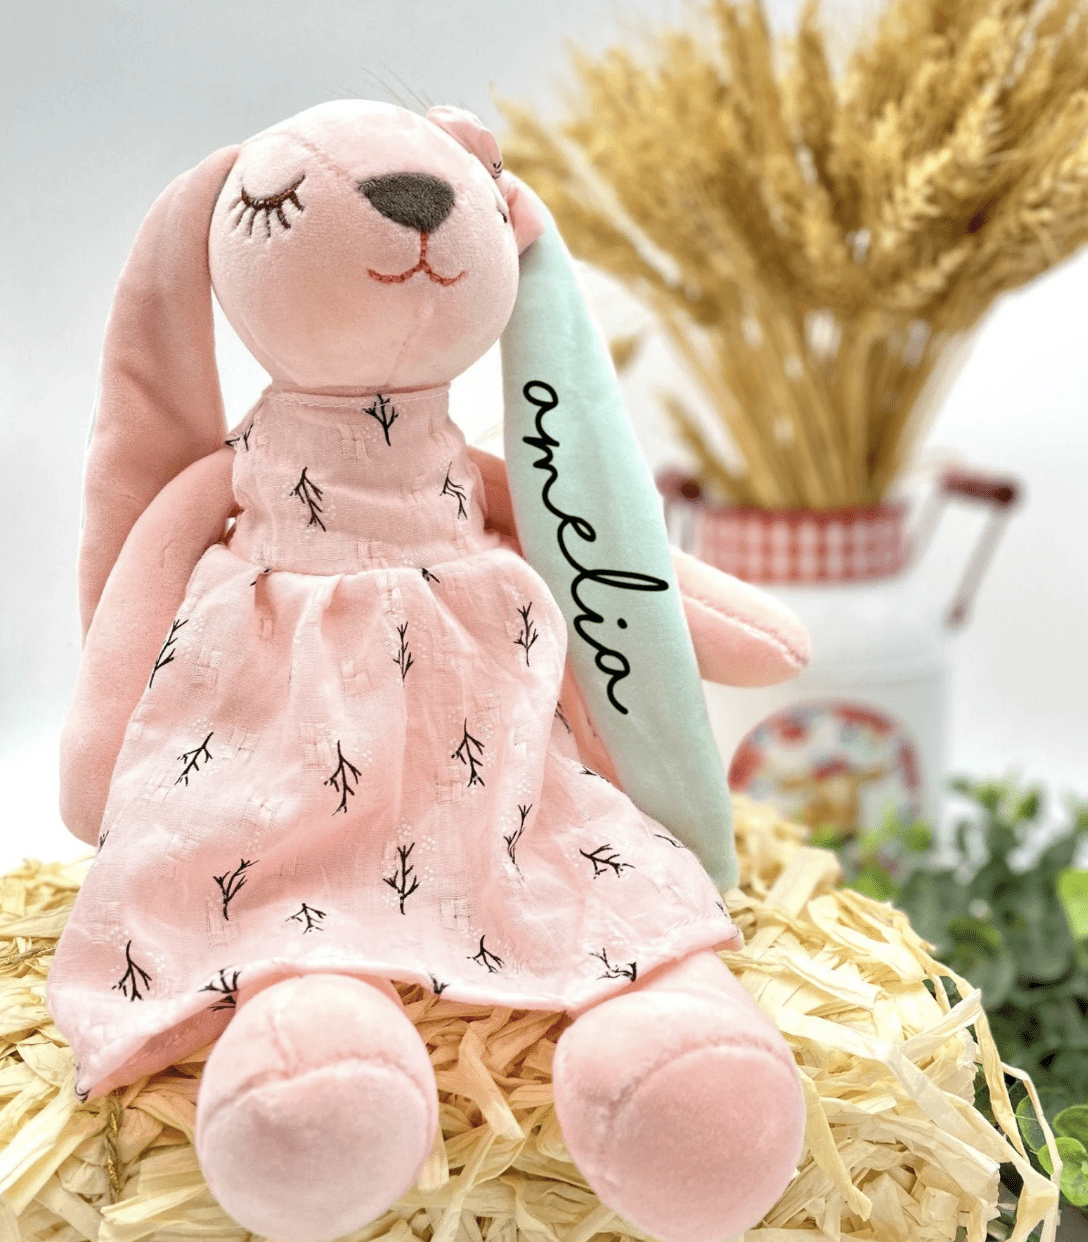 personalized stuffed animal